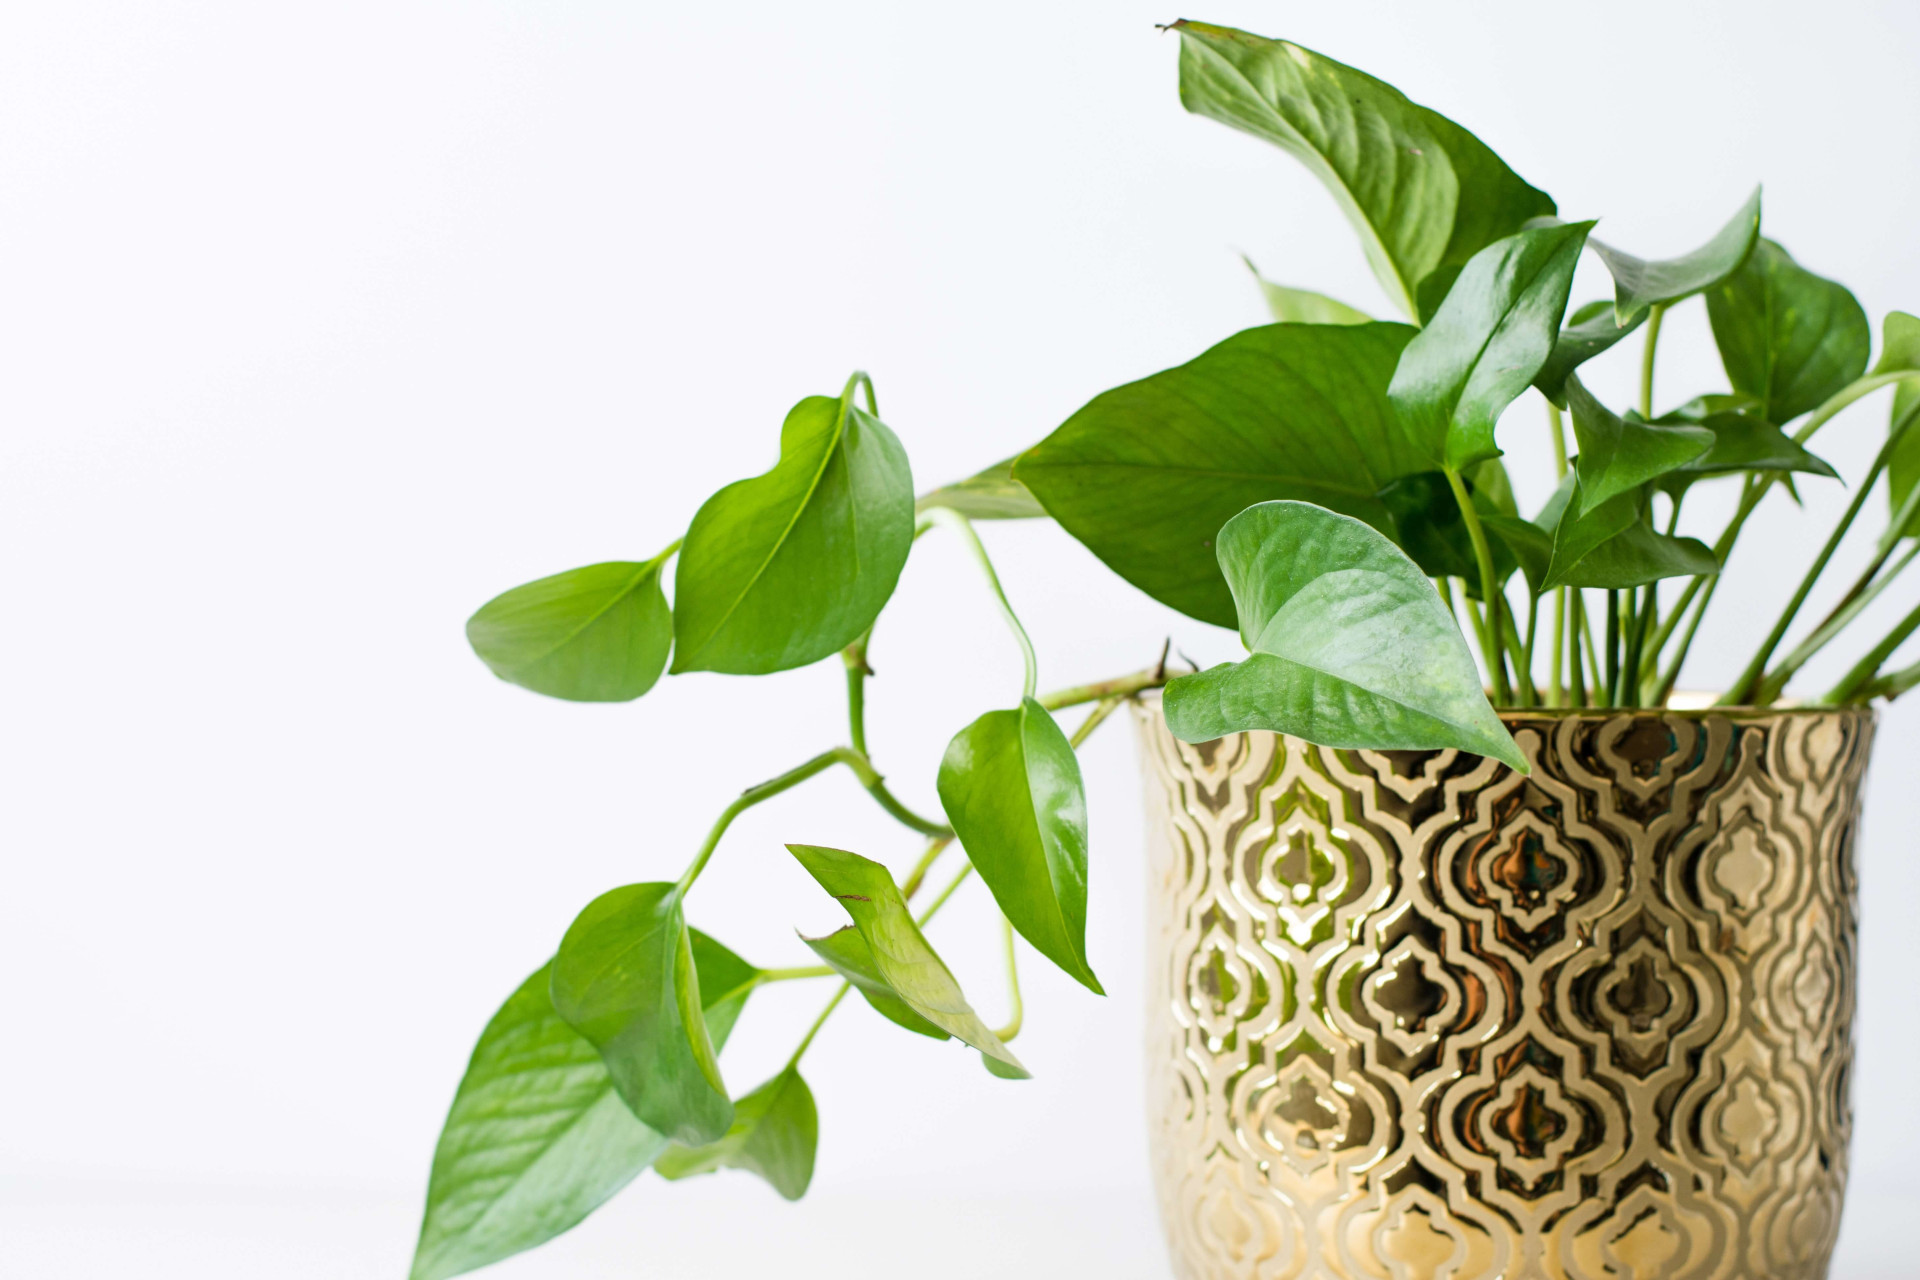 Cultive uma vida mais saudável com essas 7 plantas purificadoras (Imagens: Unsplash)